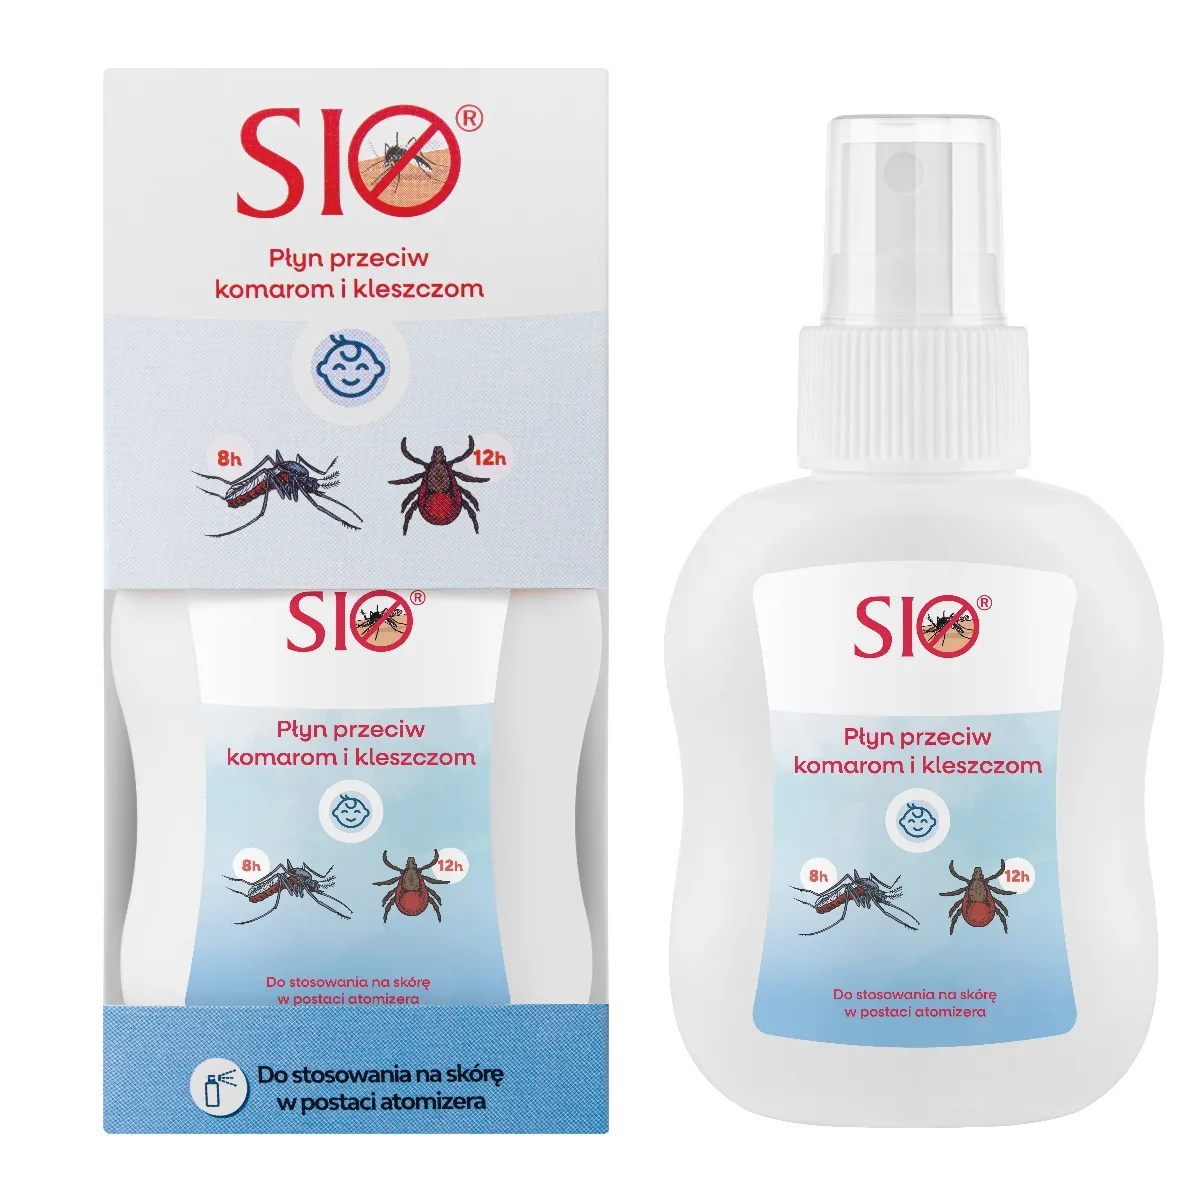 SIO Płyn przeciw komarom i kleszczom, 100ml